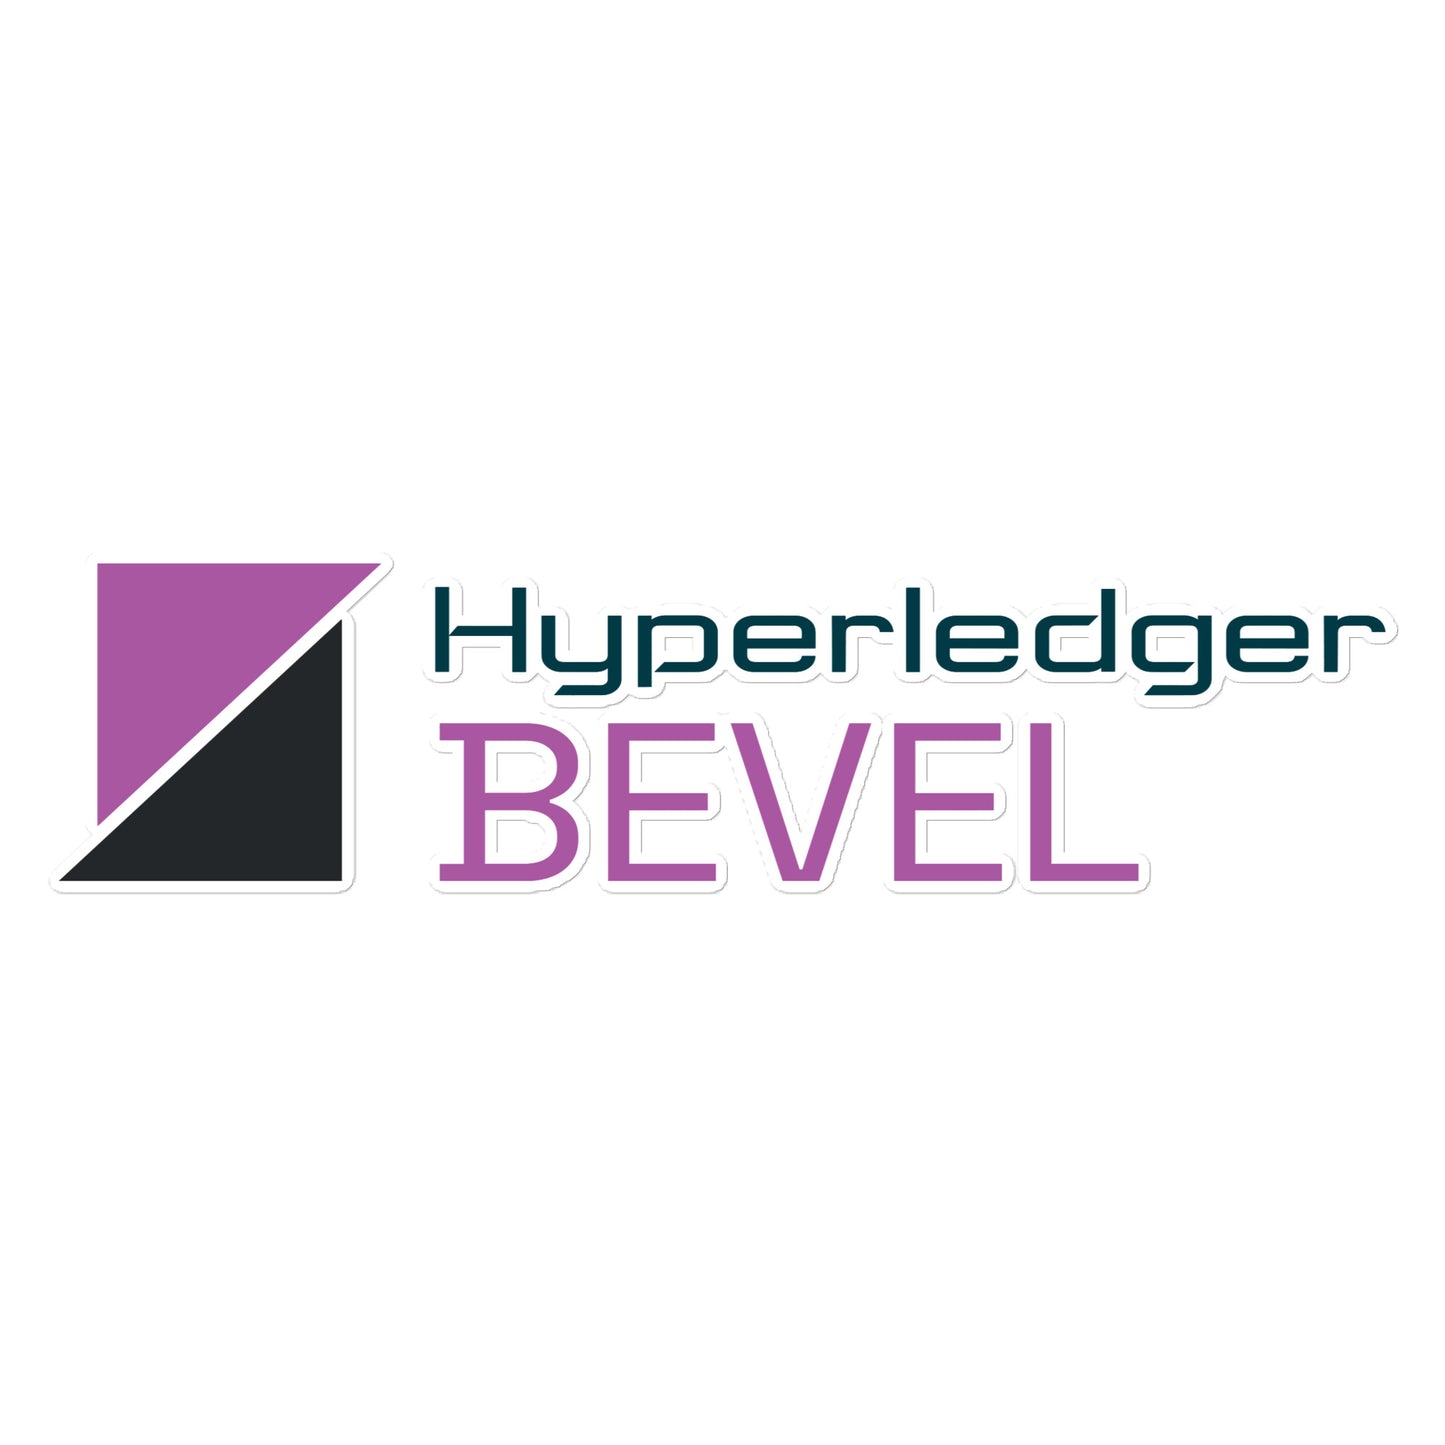 Hyperledger Bevel